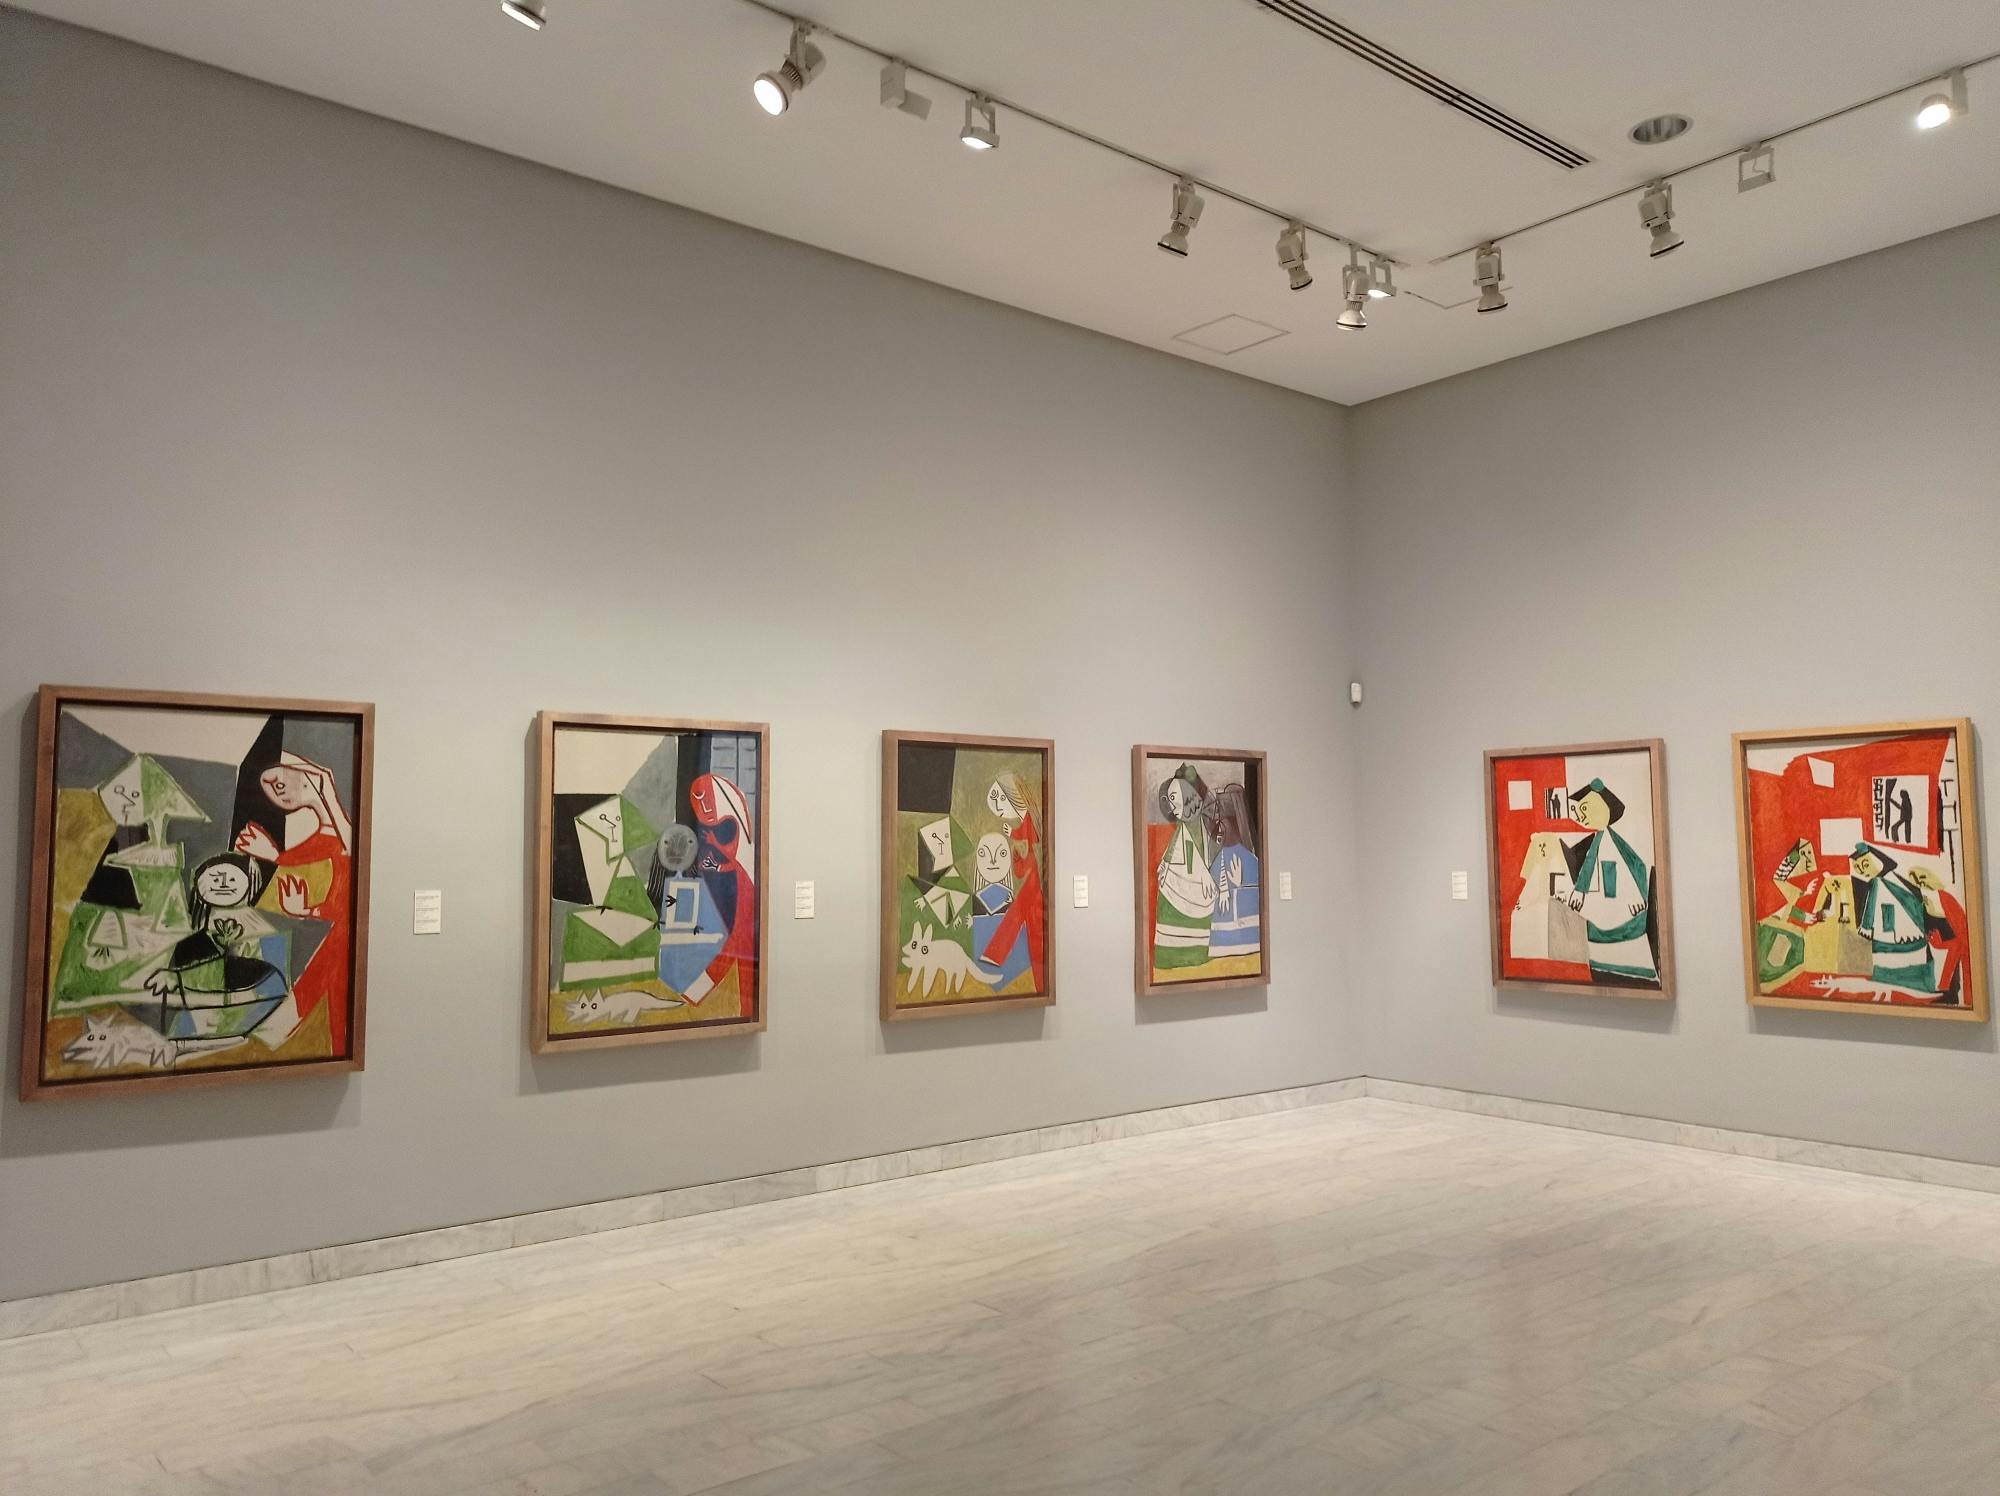 Visite guidée du musée Picasso de Barcelone avec billets coupe-file